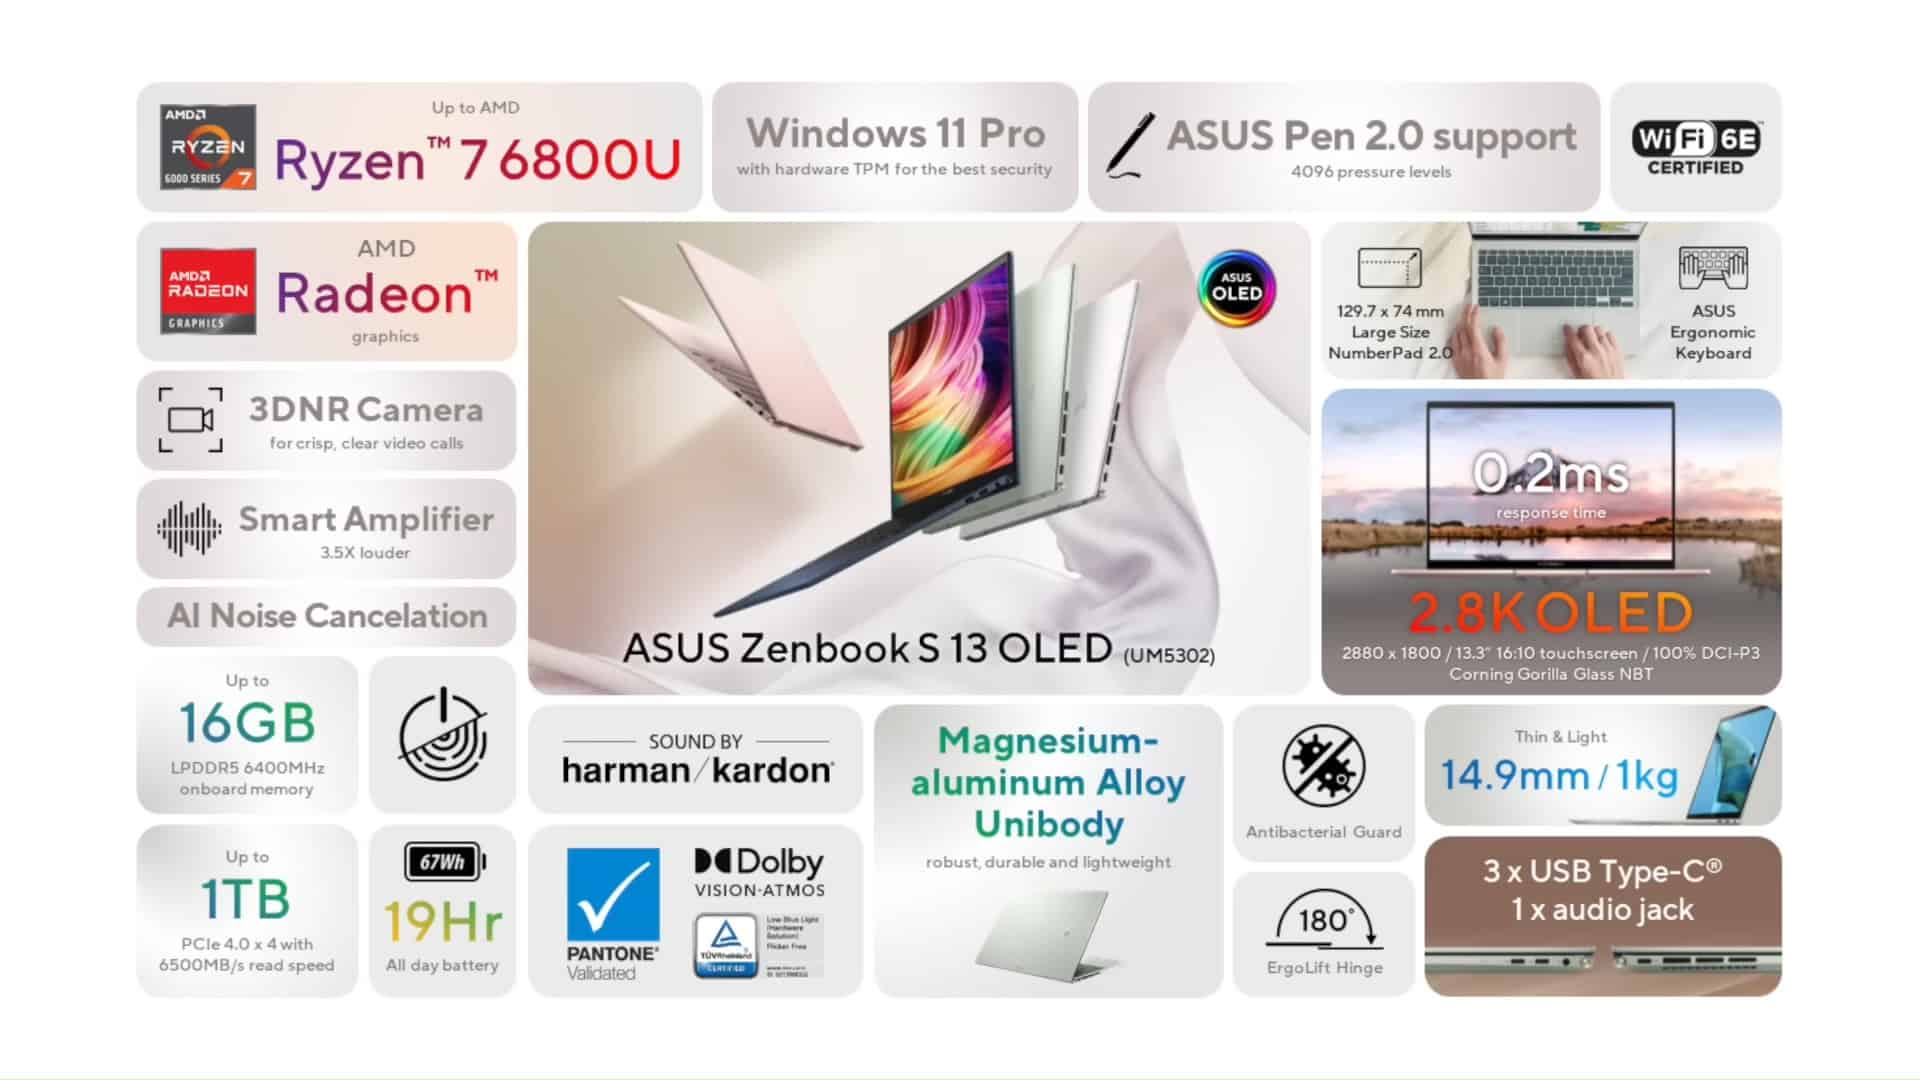 ASUS Zenbook S 13 OLED fitur kelebihan spesifikasi